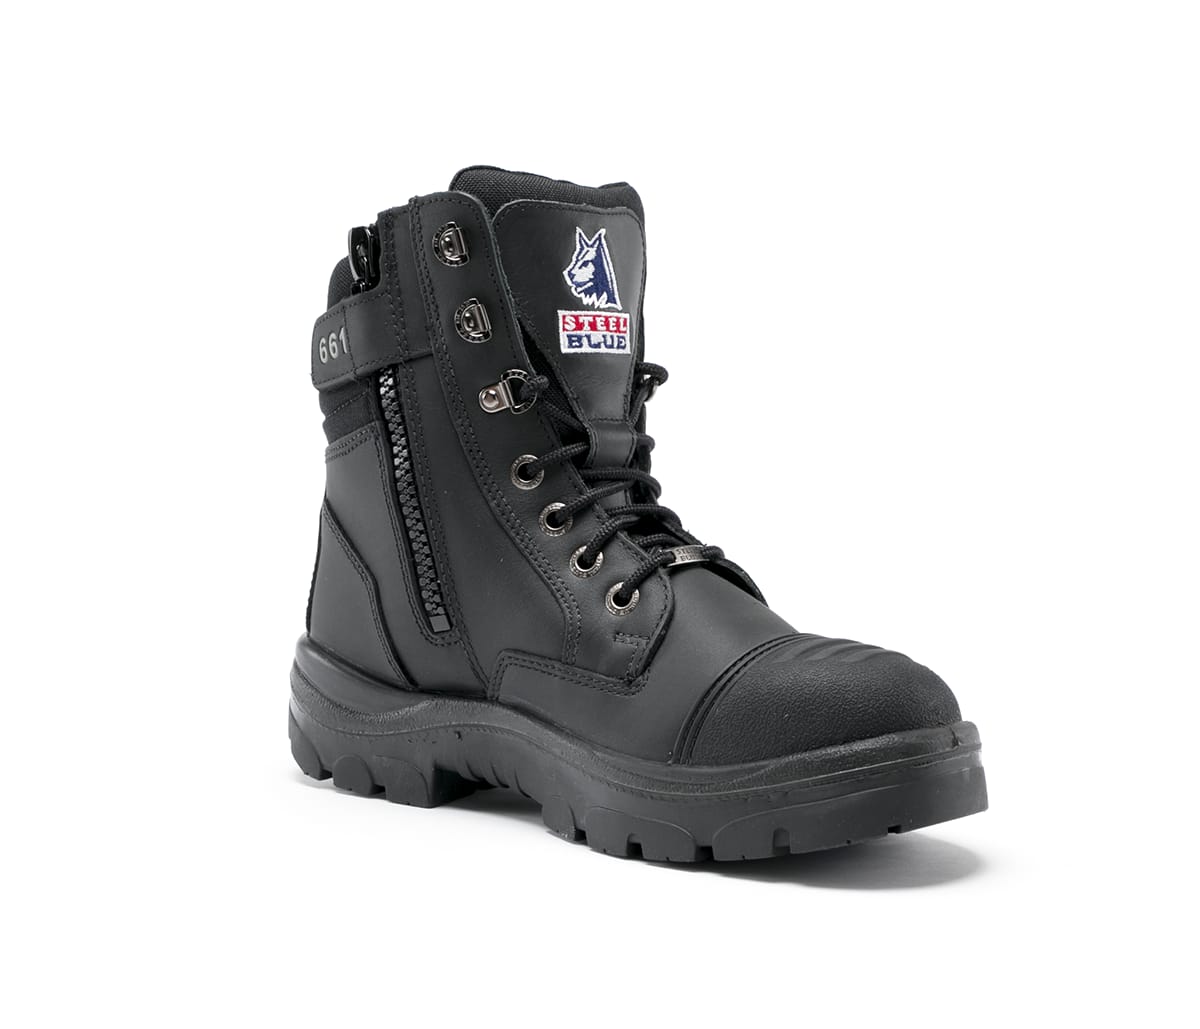 black zip up work boots